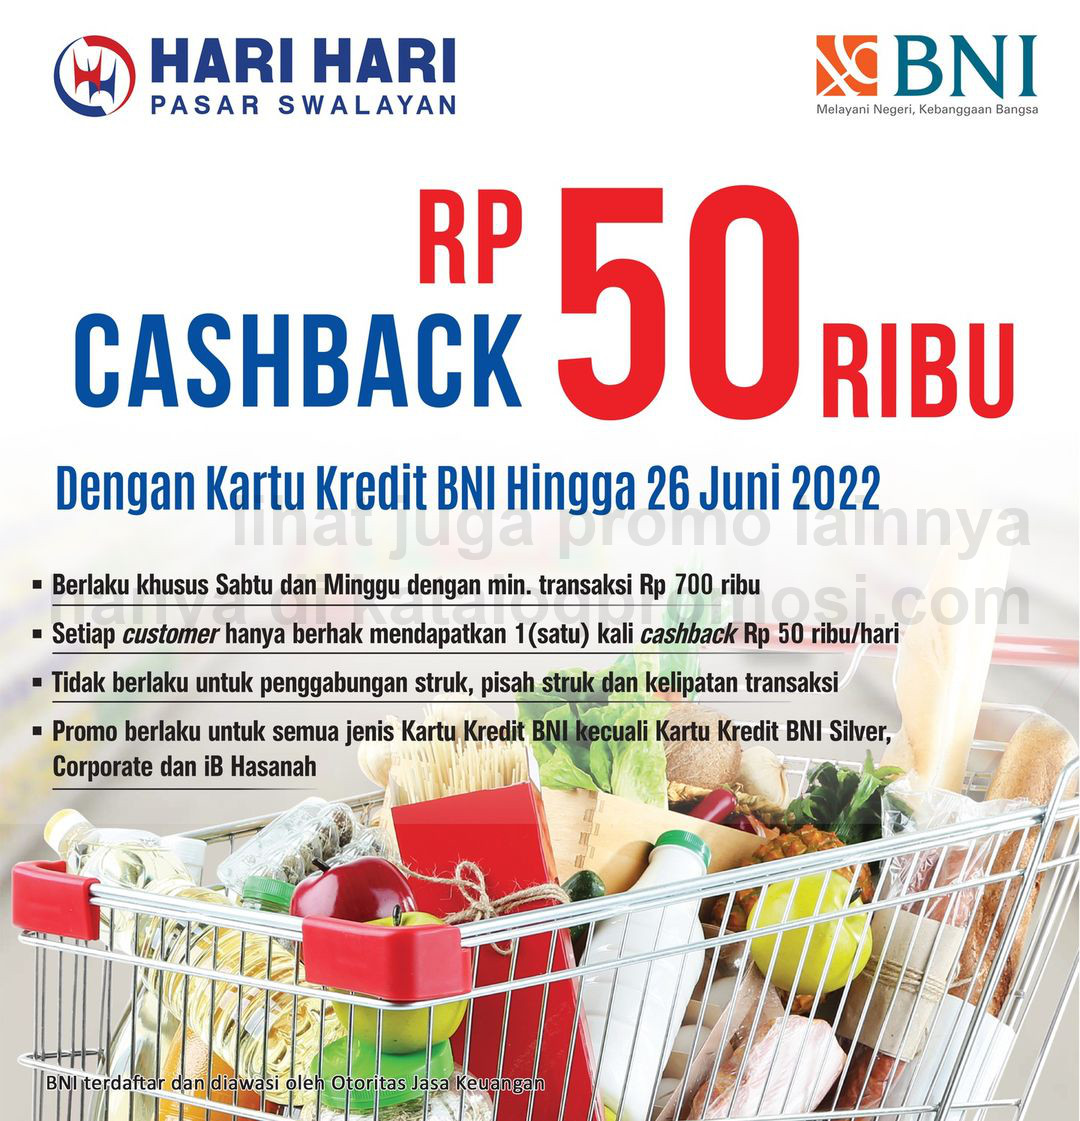 Promo Hari Hari Pasar Swalayan Cashback Rp. 50.000 untuk transaksi dengan Kartu Kredit BNI